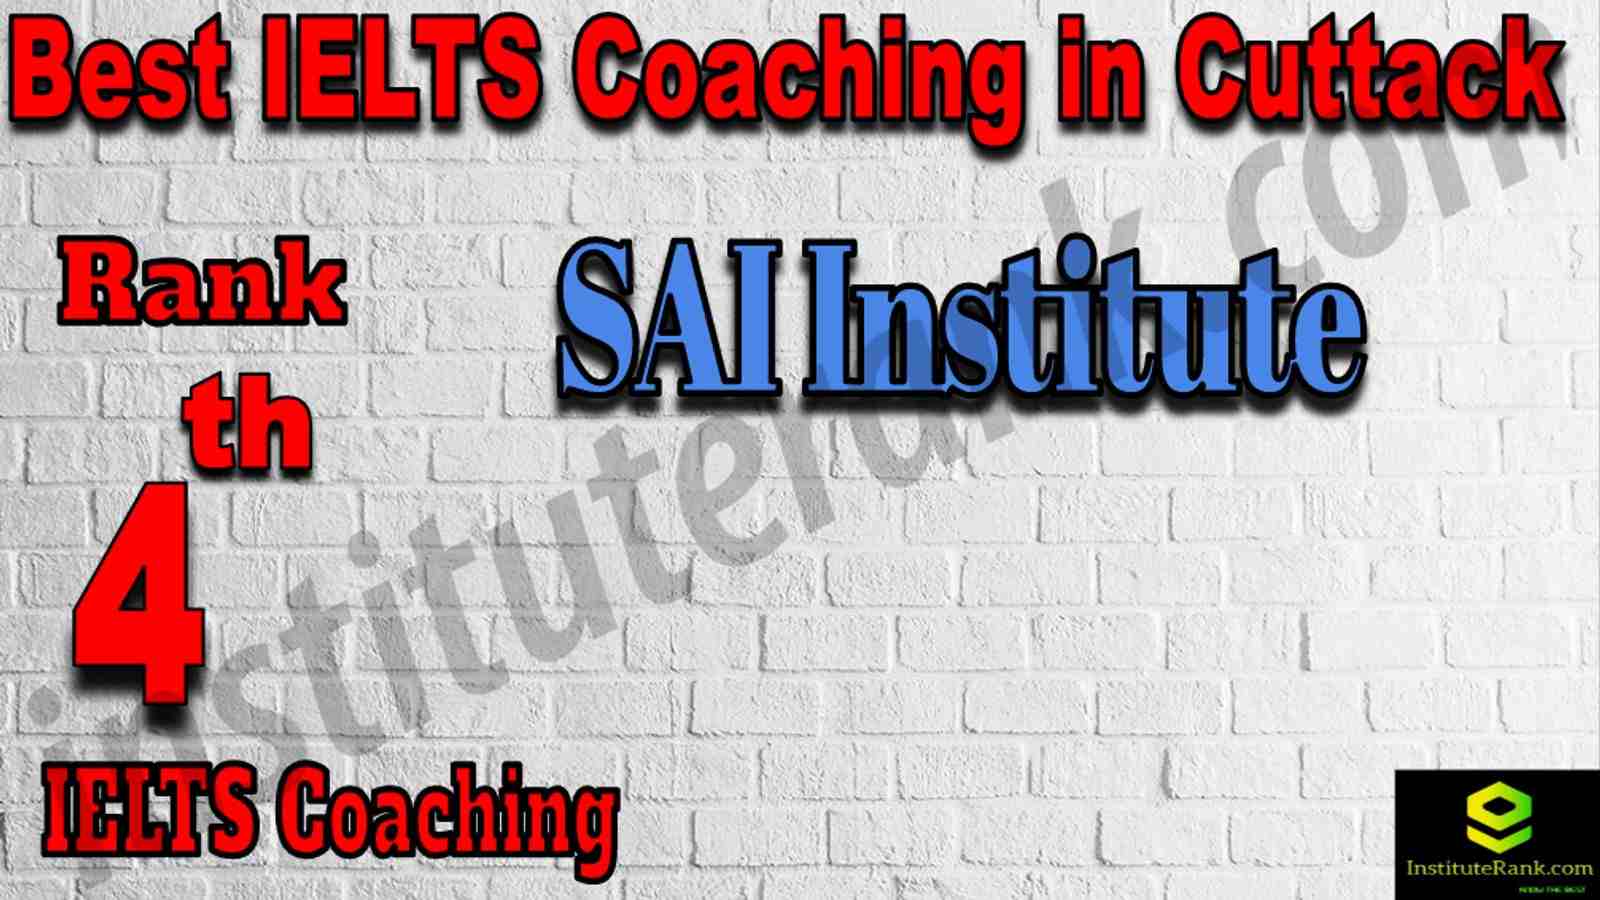 4th Best IELTS Coaching in Cuttack